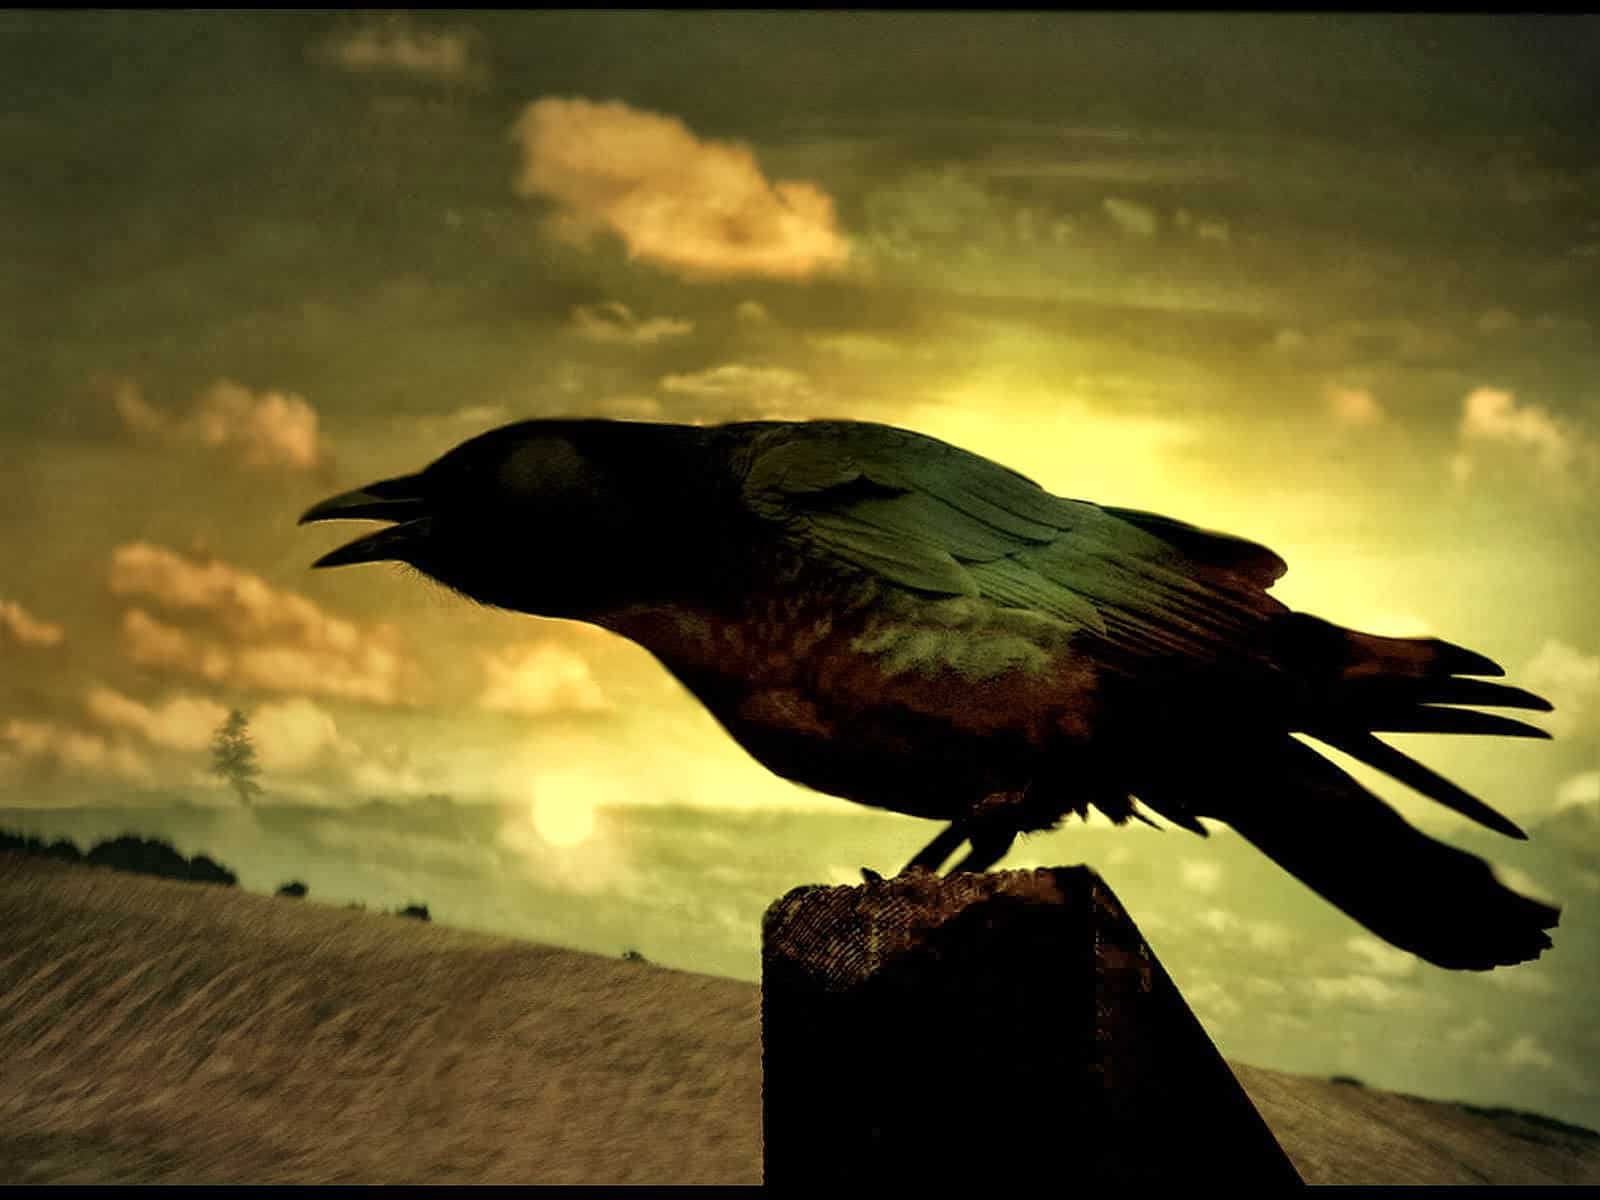 El cuervo de Edgar Allan Poe